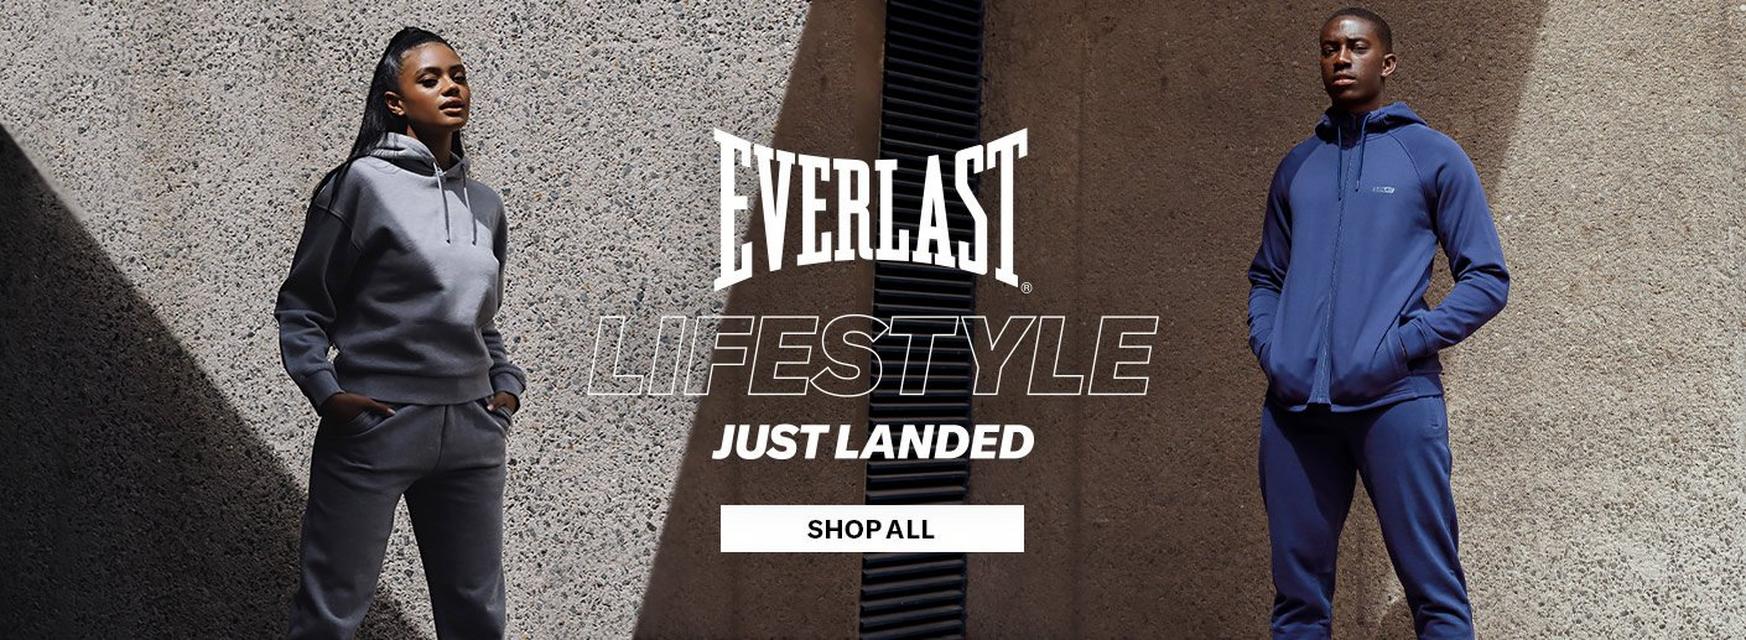 Everlast Lifestyle